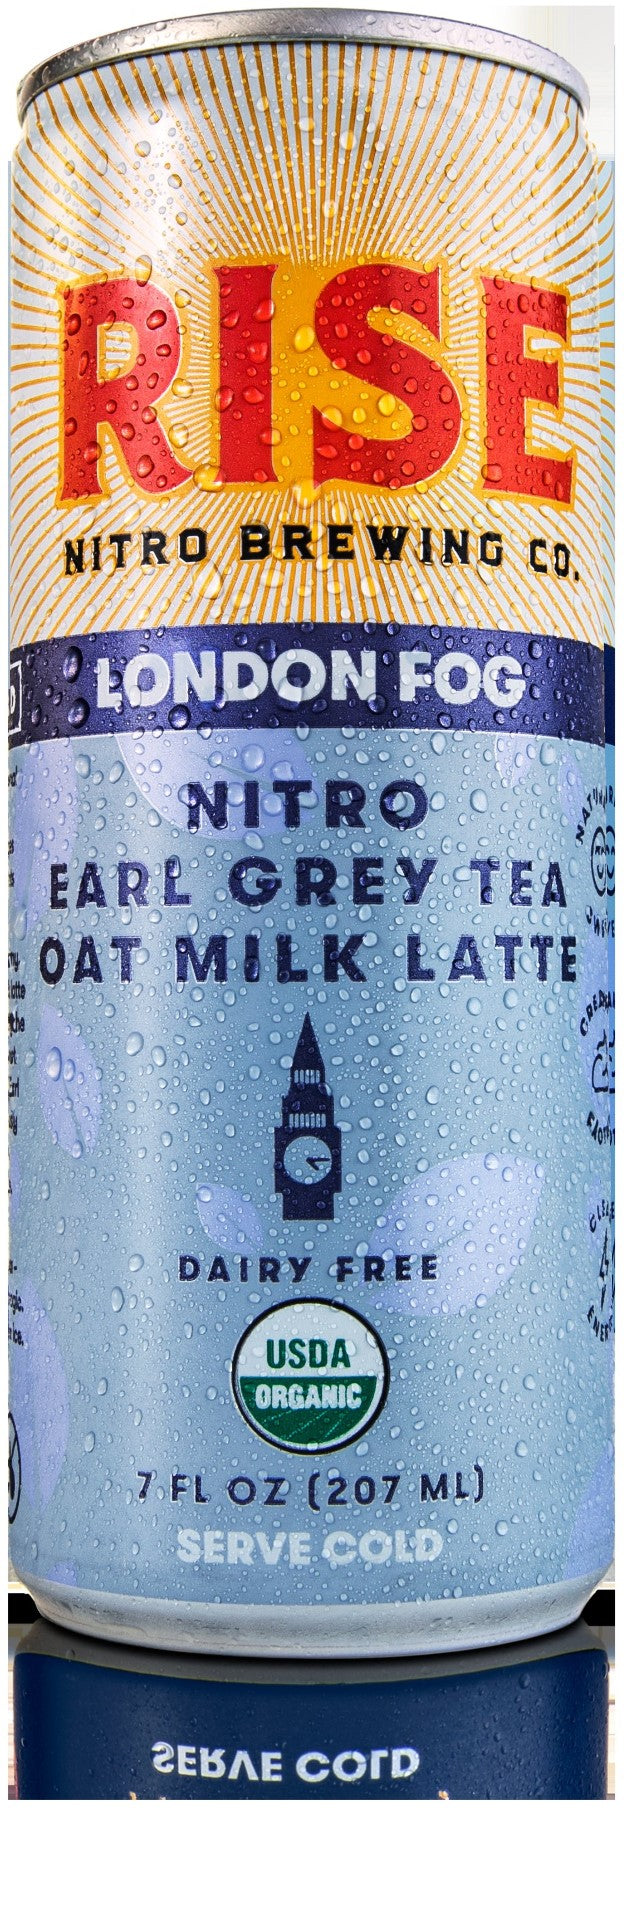 London Fog Nitro Earl Grey Tea Oat Milk Latte 7 Fluid Ounce - 12 Per Case.